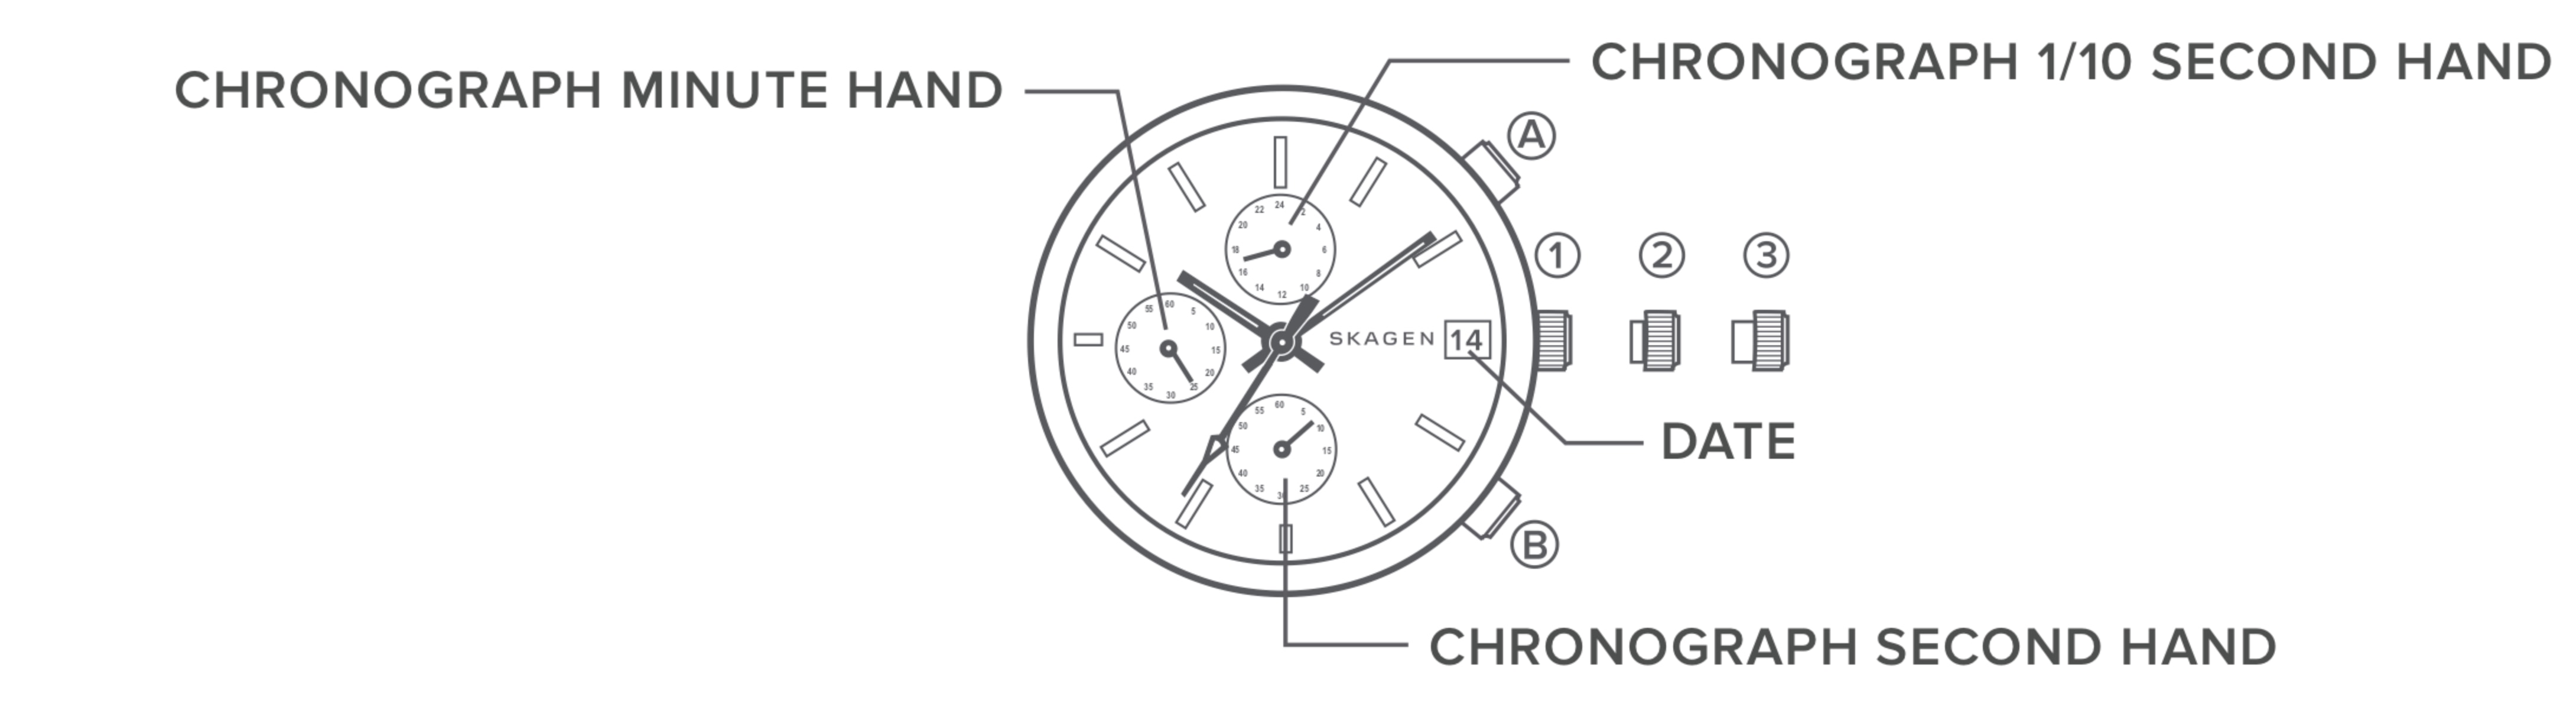 Illustration eines Chronographen-Zifferblatts mit Beschriftung der einzelnen Teile.